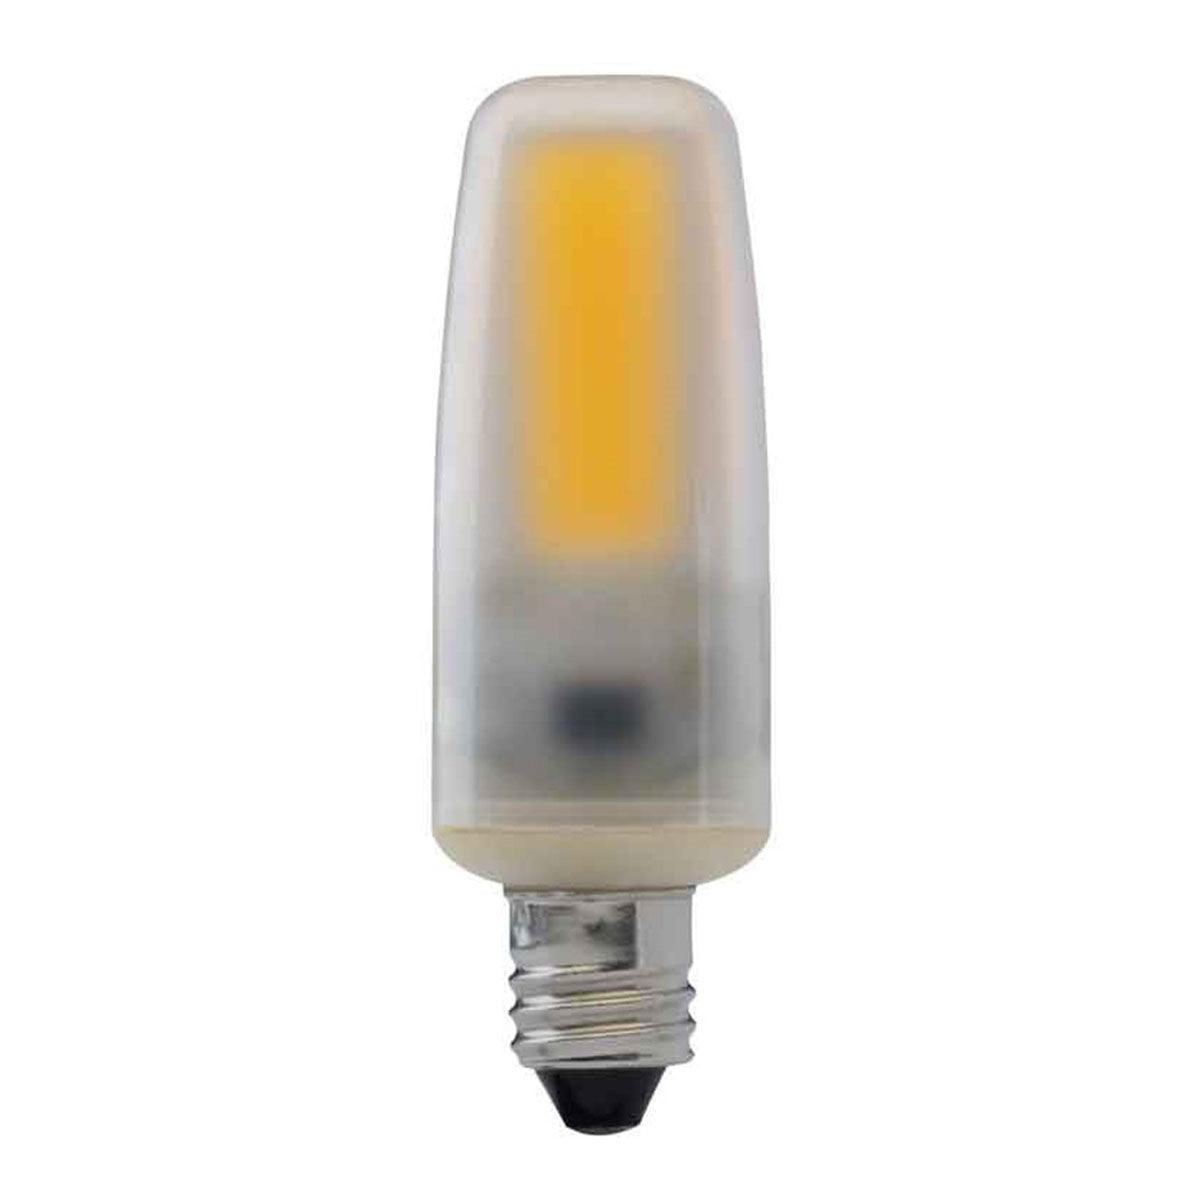 T4 Mini LED Bulb, 4 Watt, 460 Lumens, 5000K, E11 Mini-Candelabra Base, Frosted Finish